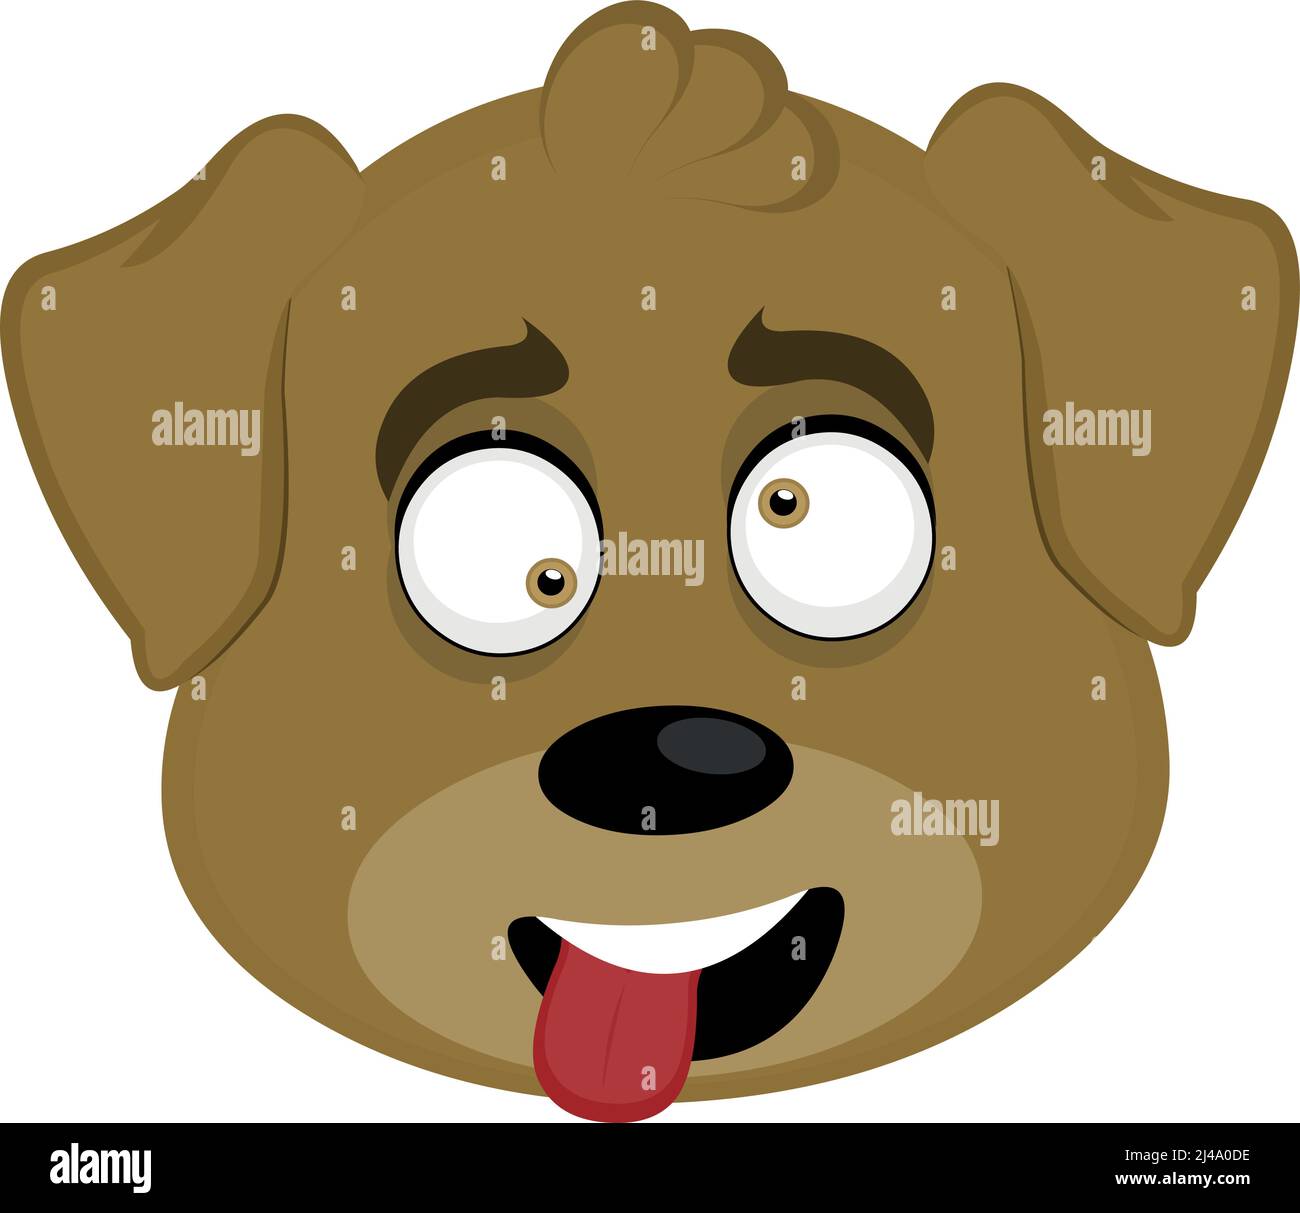 Illustration vectorielle d'émoticône, dessin animé de la tête d'un chien avec une expression moqueuse avec des yeux sauvages et en collant sa langue avec une bouche ouverte Illustration de Vecteur